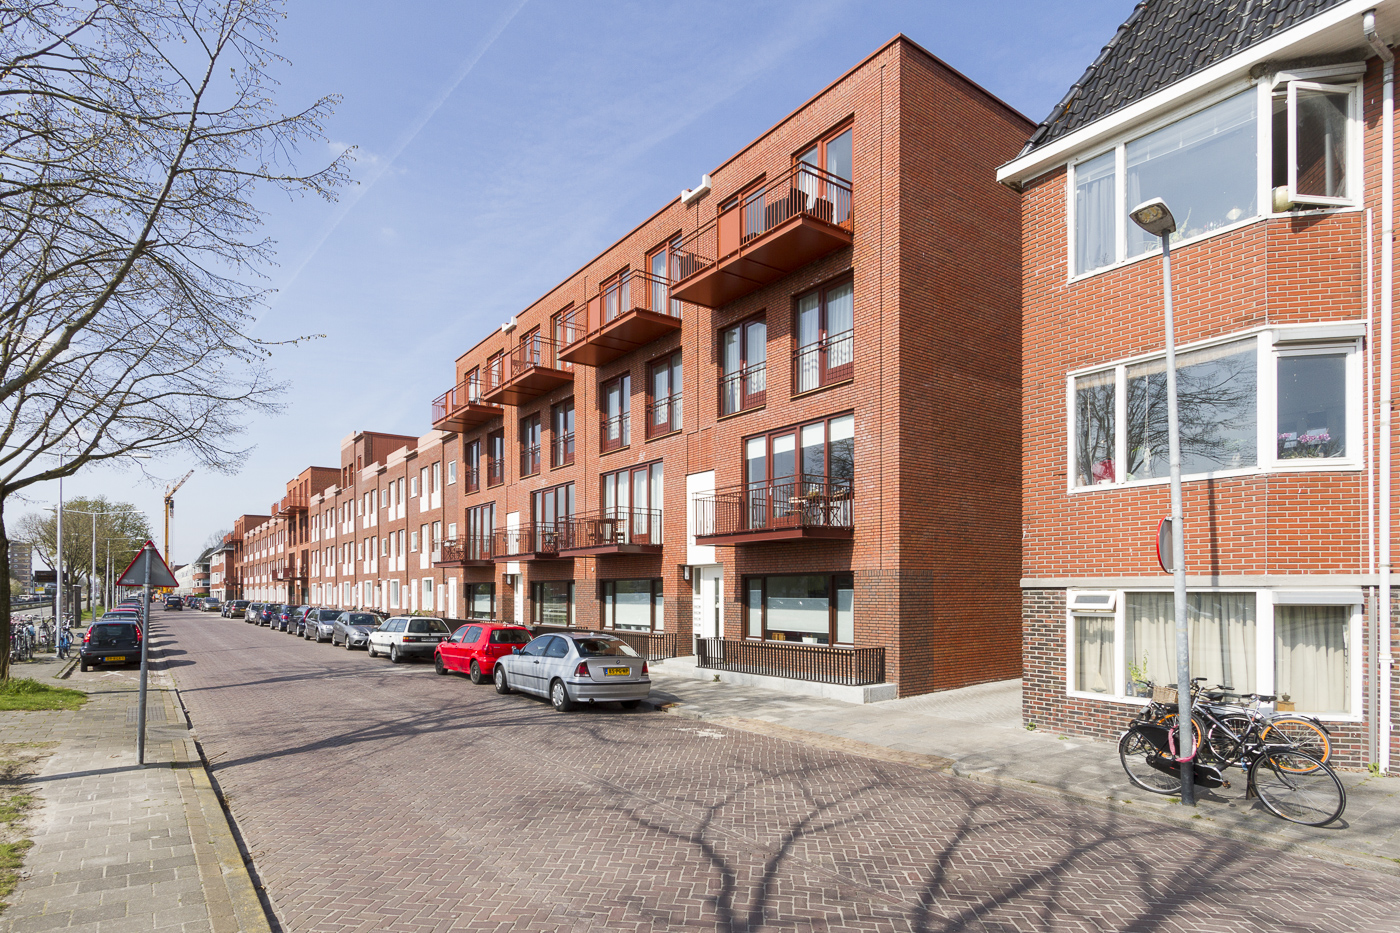 Aan de noordzijde van de Oosterhamrikkade, in de Professorenbuurt, is recentelijk een fraai complex van woningen en appartementen verrezen. Op deze plek bevond zich een kleinschalig bedrijfs- en industriegebied.  (505 stemmen)